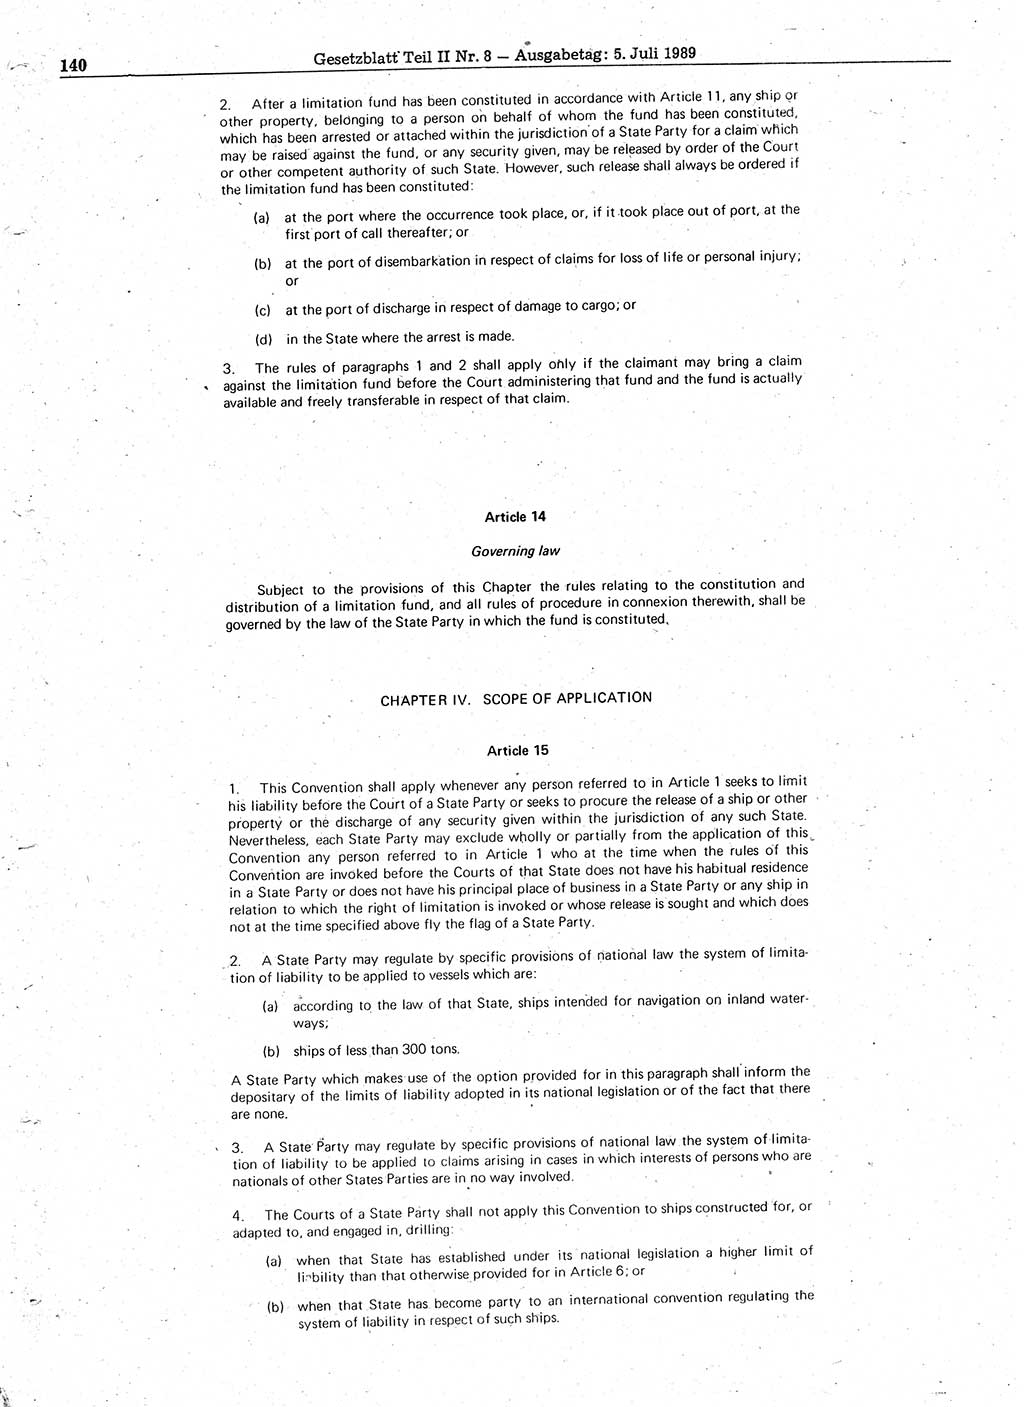 Gesetzblatt (GBl.) der Deutschen Demokratischen Republik (DDR) Teil ⅠⅠ 1989, Seite 140 (GBl. DDR ⅠⅠ 1989, S. 140)